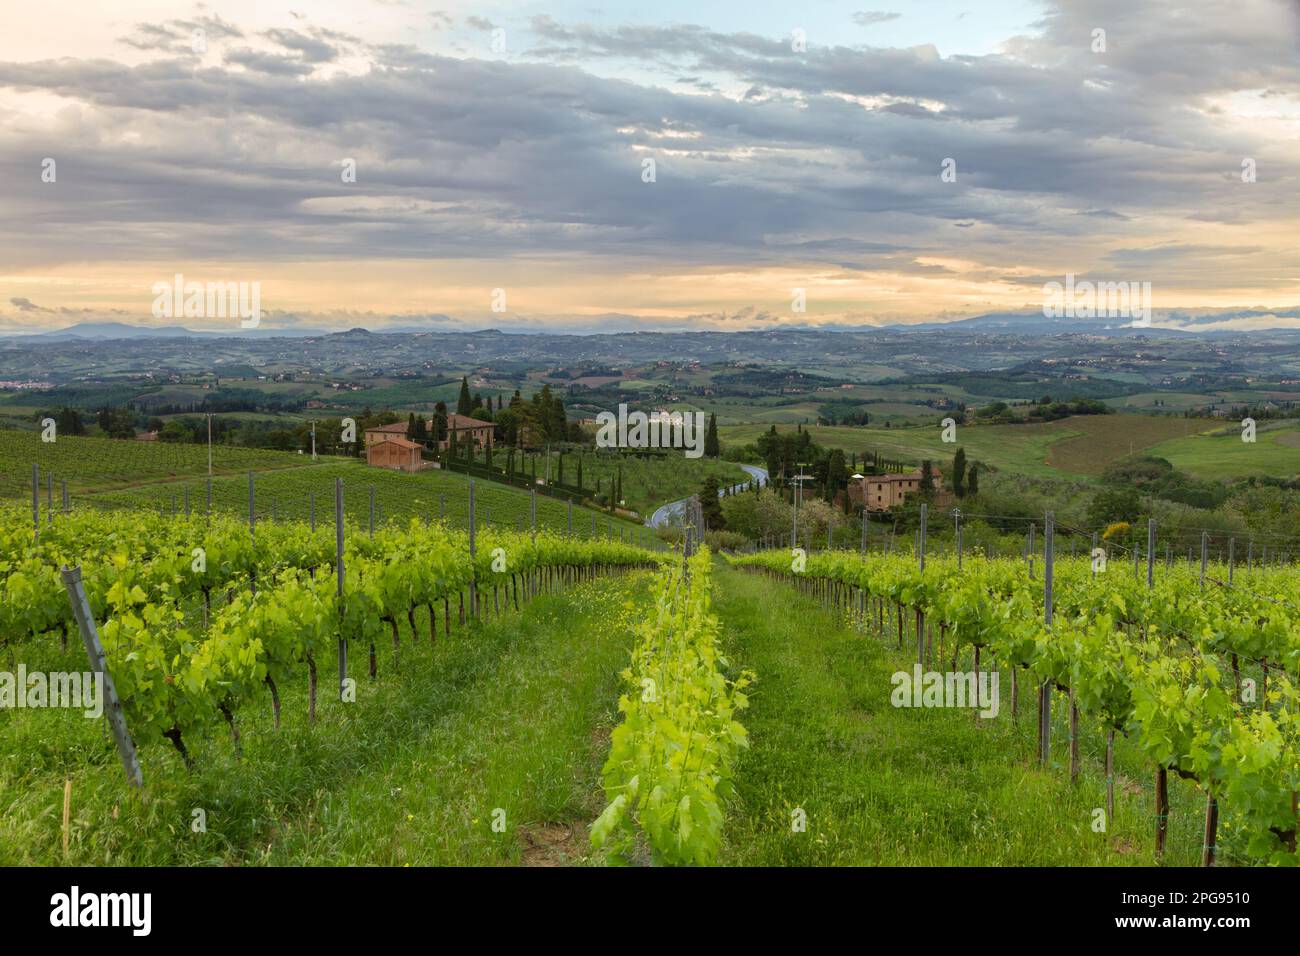 Vineyards in Tuscany at dusk, Italy Stock Photo